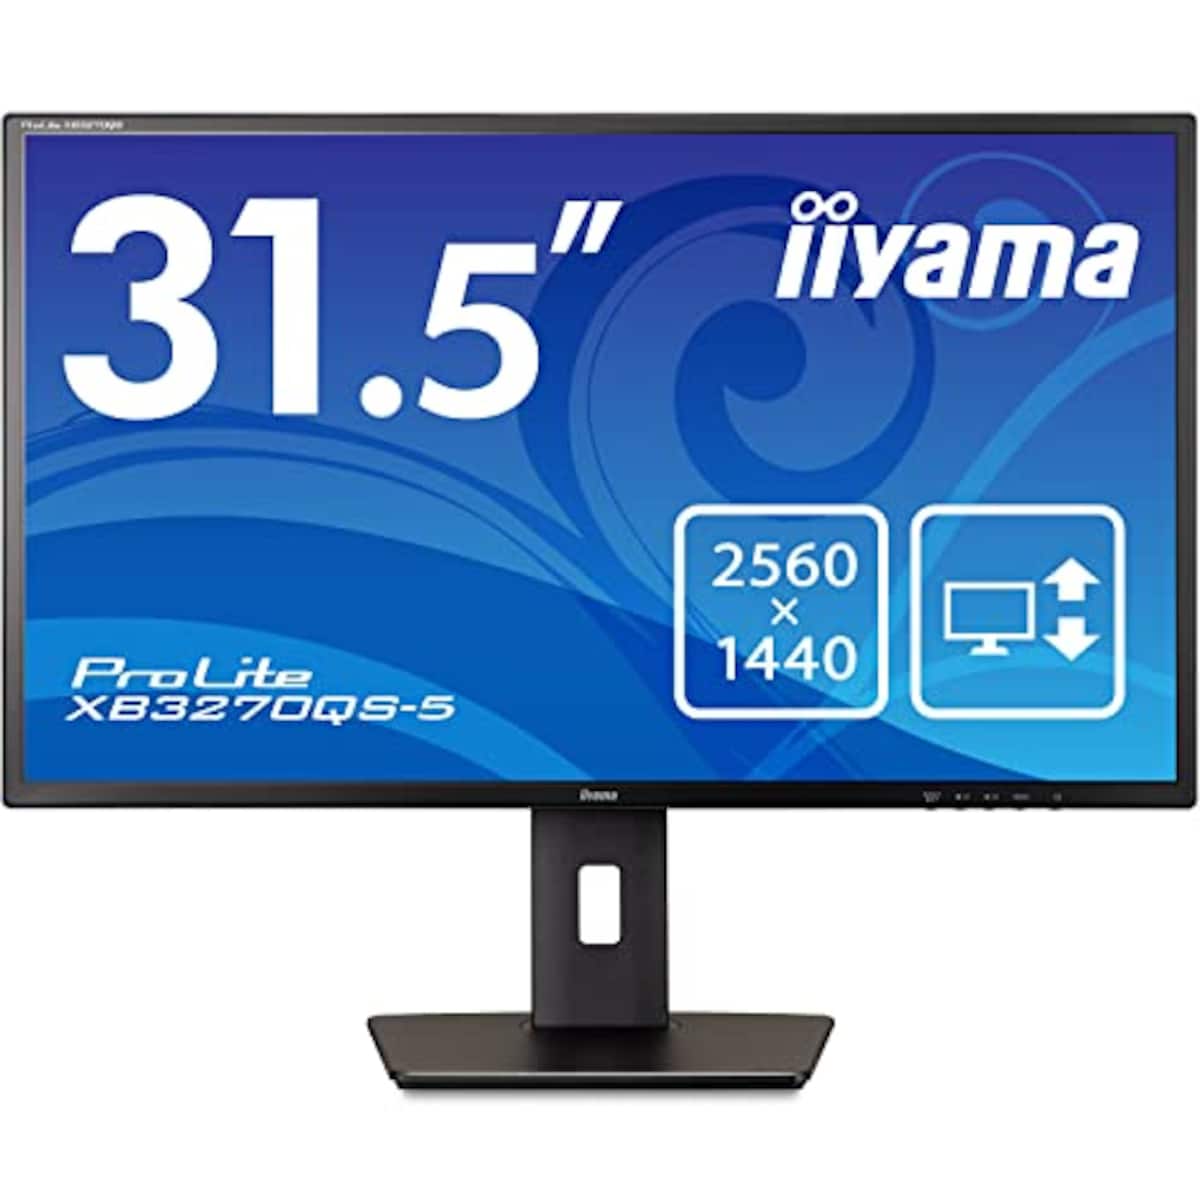 マウスコンピューター iiyama モニター ディスプレイ 31.5インチ WQHD 2560×1440 IPS方式 高さ調整 角度調整 HDMI DisplayPort DVI-D 全ケーブル付 3年保証 国内サポート XB3270QS-B5